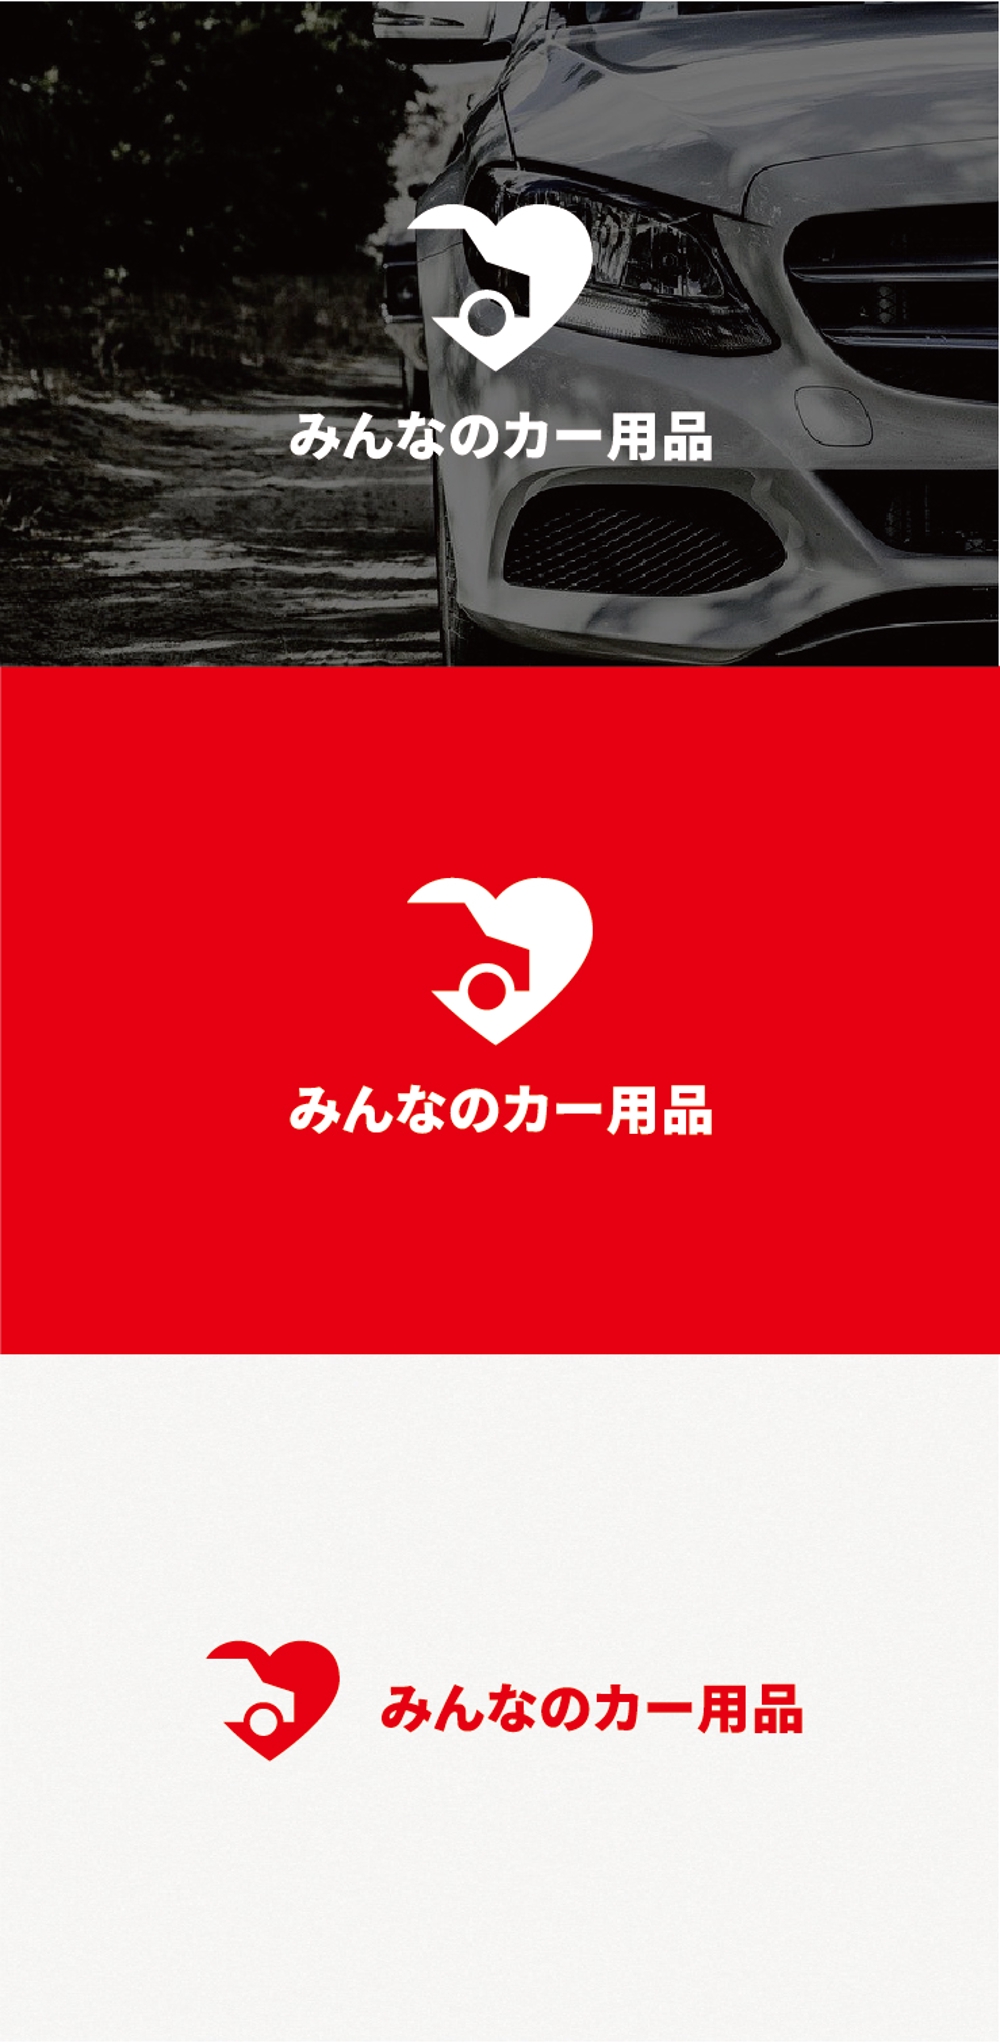 カー用品ブランド『みんなのカー用品』のロゴ